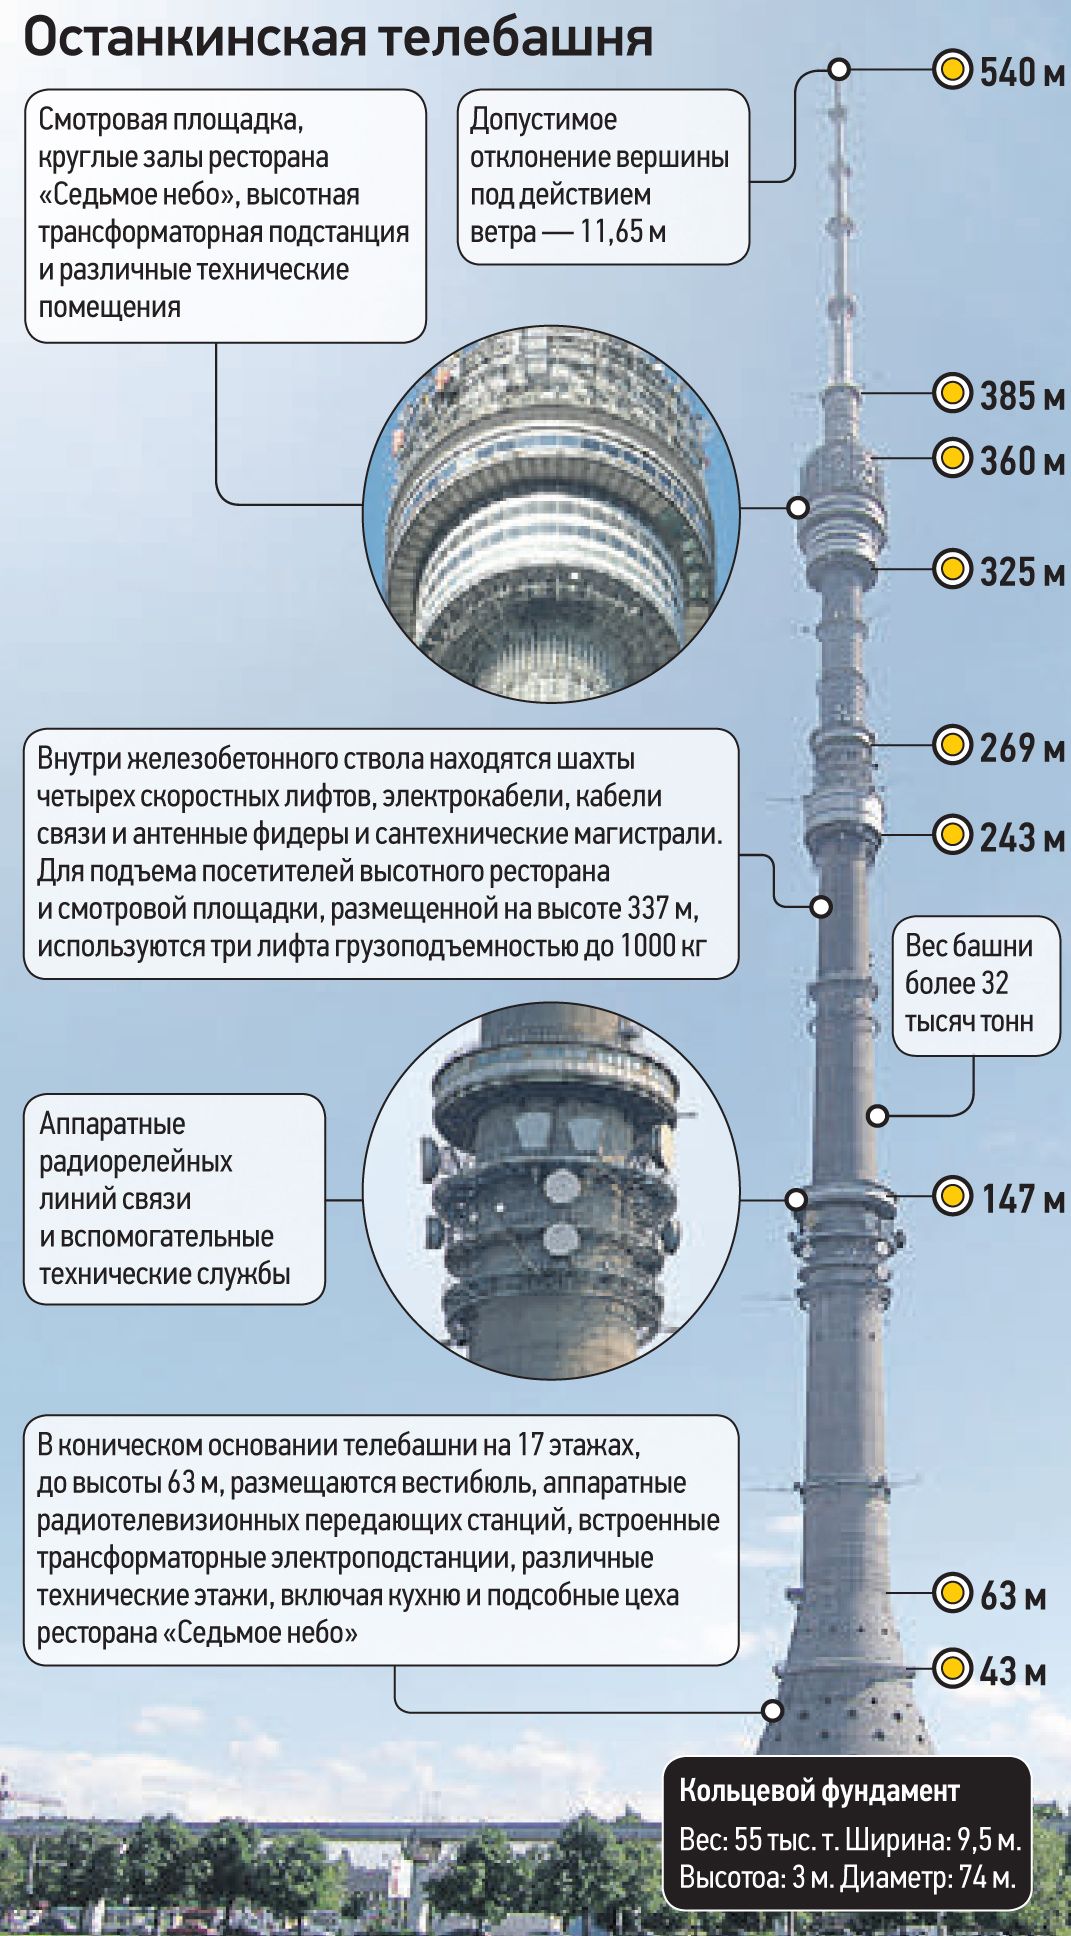 До скольки работает башня. Высота Останкинской башни. Высота телебашни Останкино в Москве. Высота Останкинской башни в метрах. Диаметр Останкинской башни.